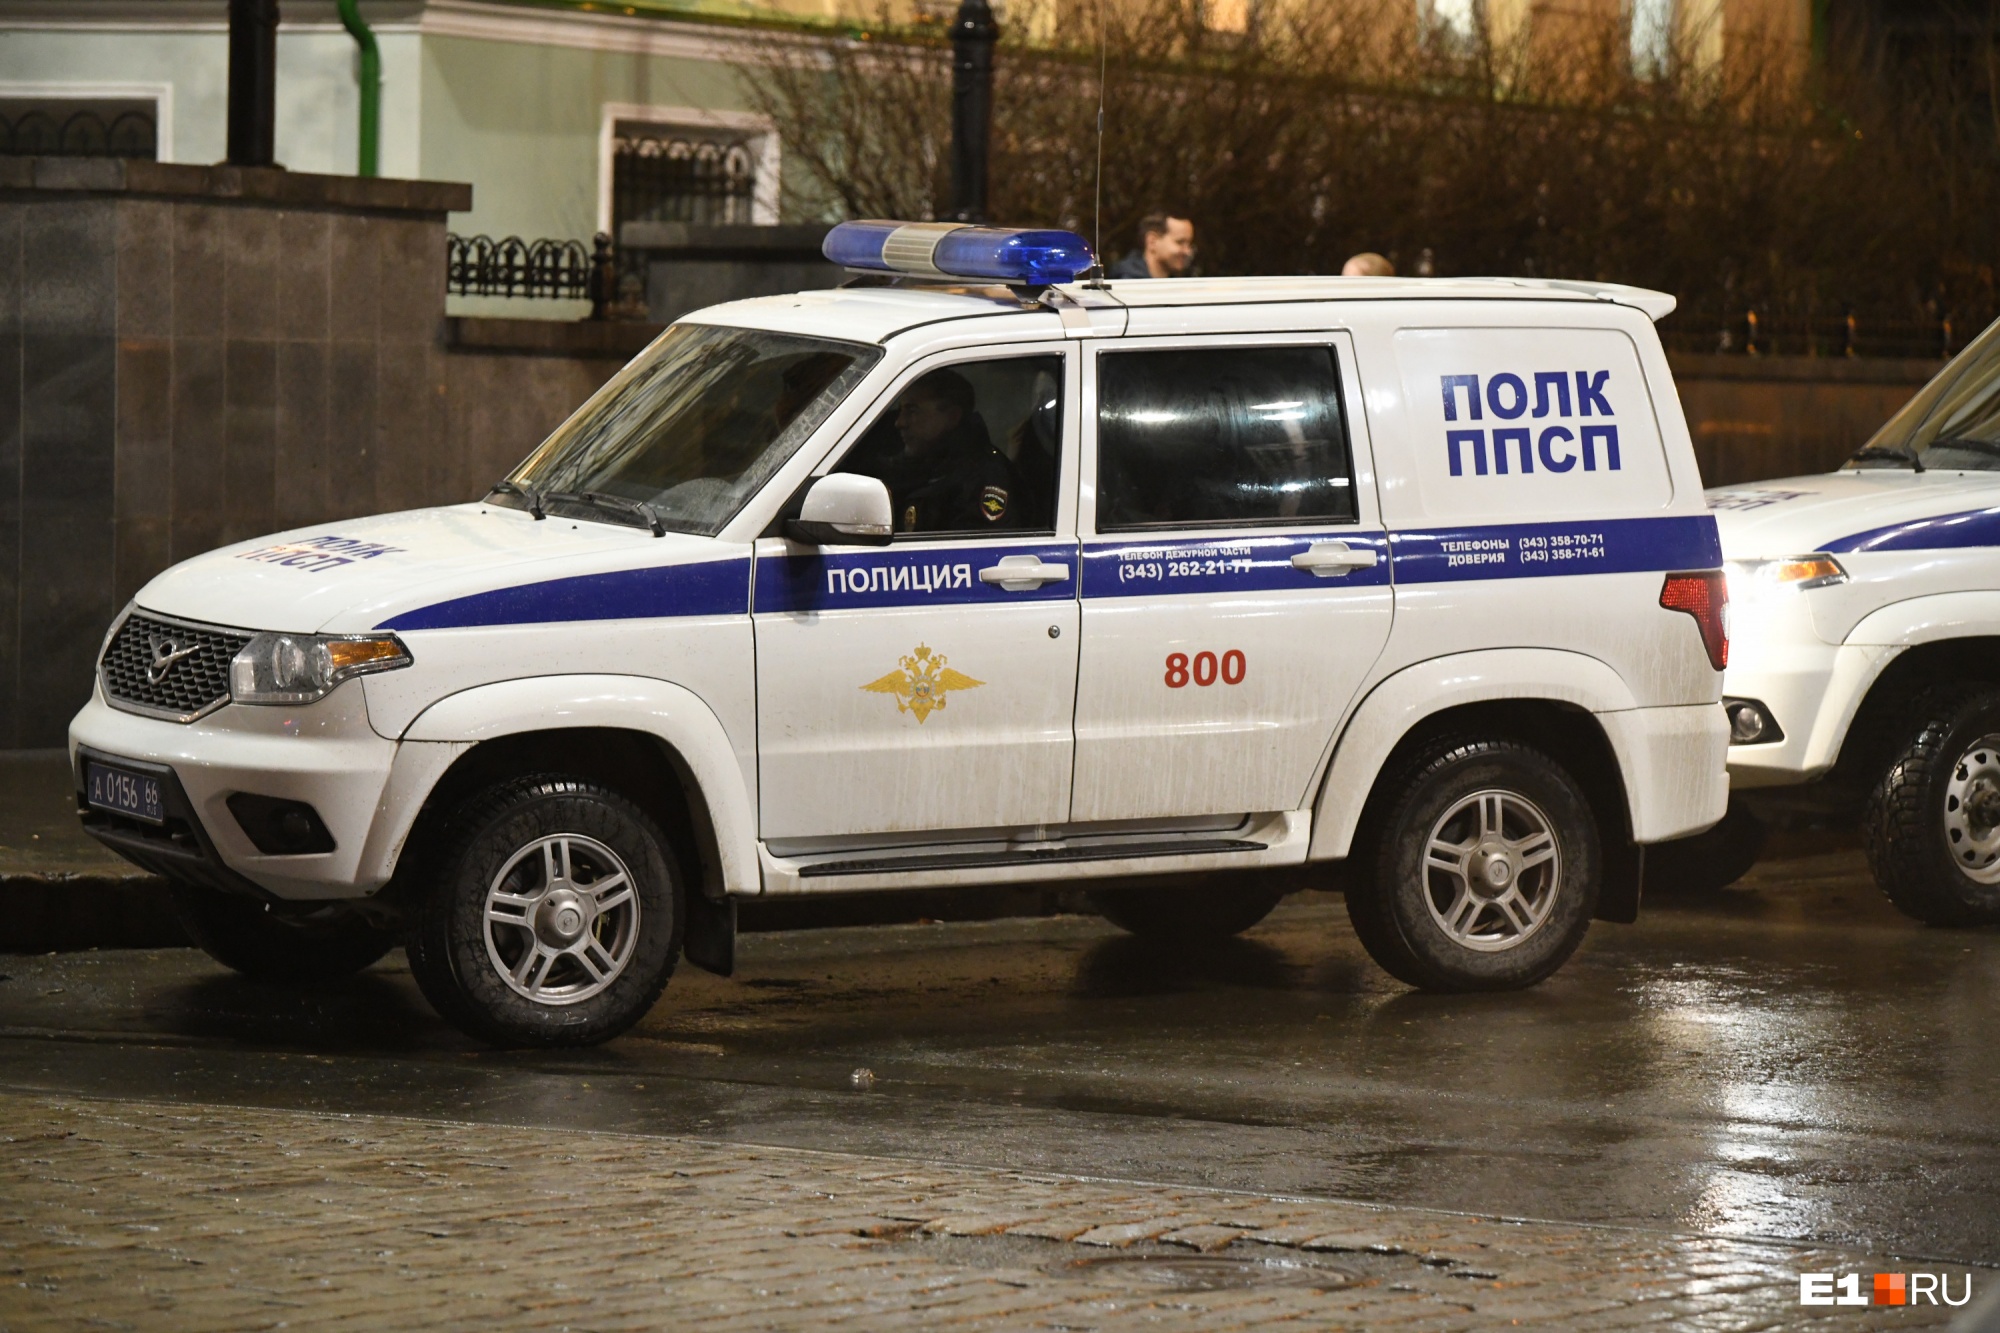 В Екатеринбурге полиция ищет мужчину, разгуливающего с пистолетом